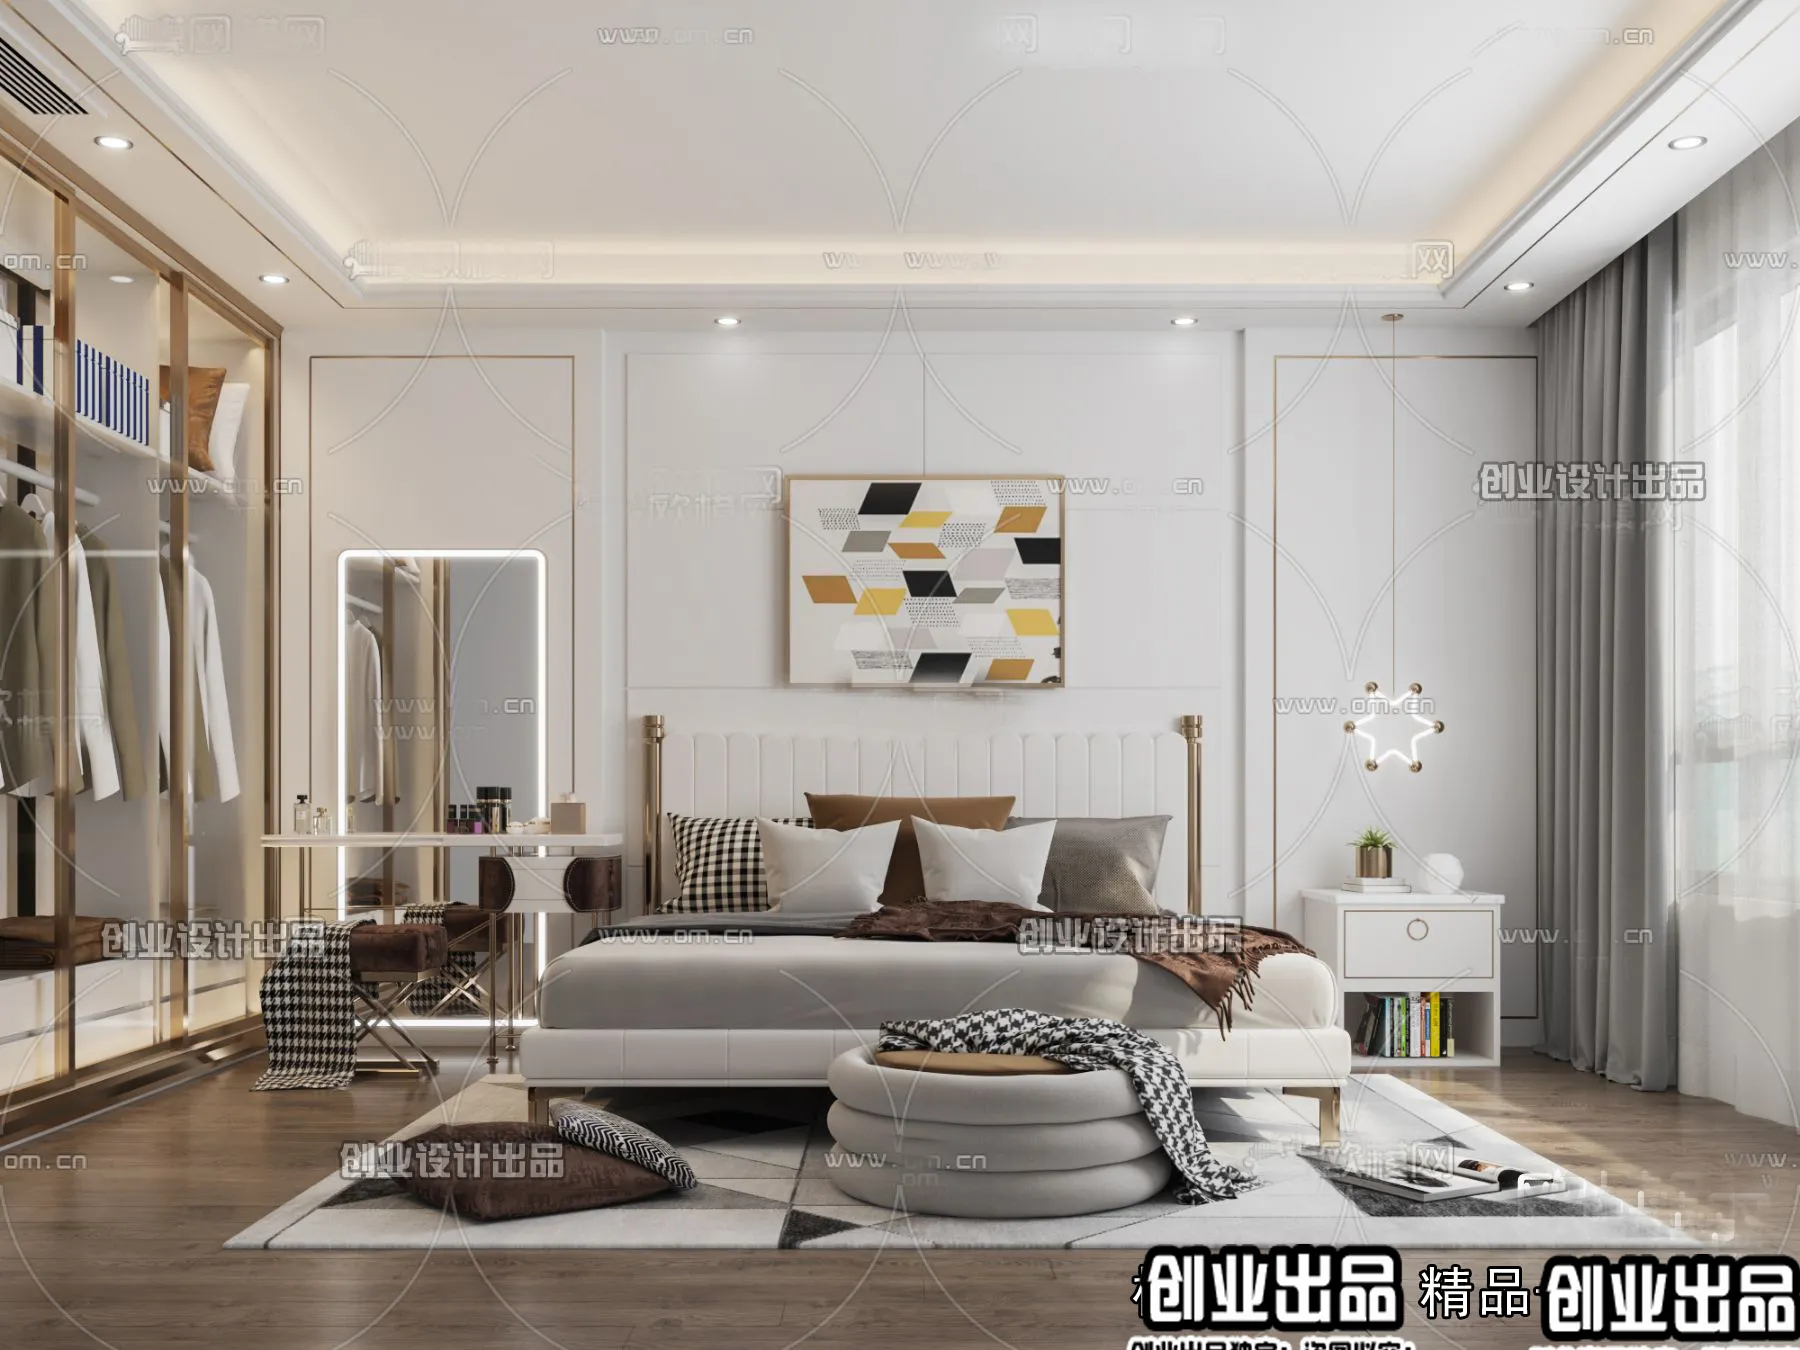 Bedroom – Modern Design – 3D66 – 3D Scenes – 024